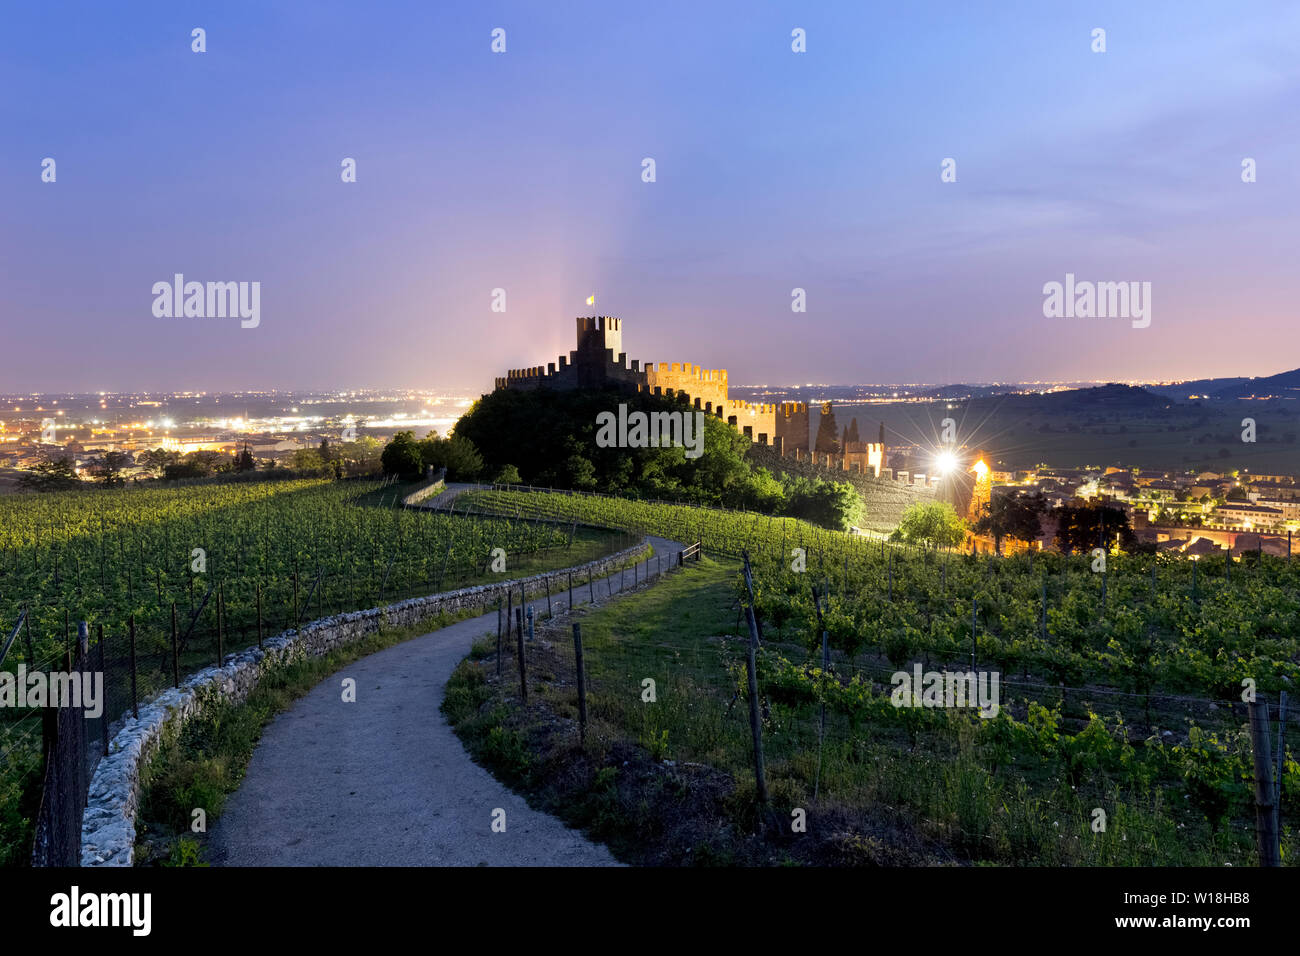 Il castello Scaligero e la strada tra il vino Soave vigne. Soave, provincia di Verona, Veneto, Italia, Europa. Foto Stock